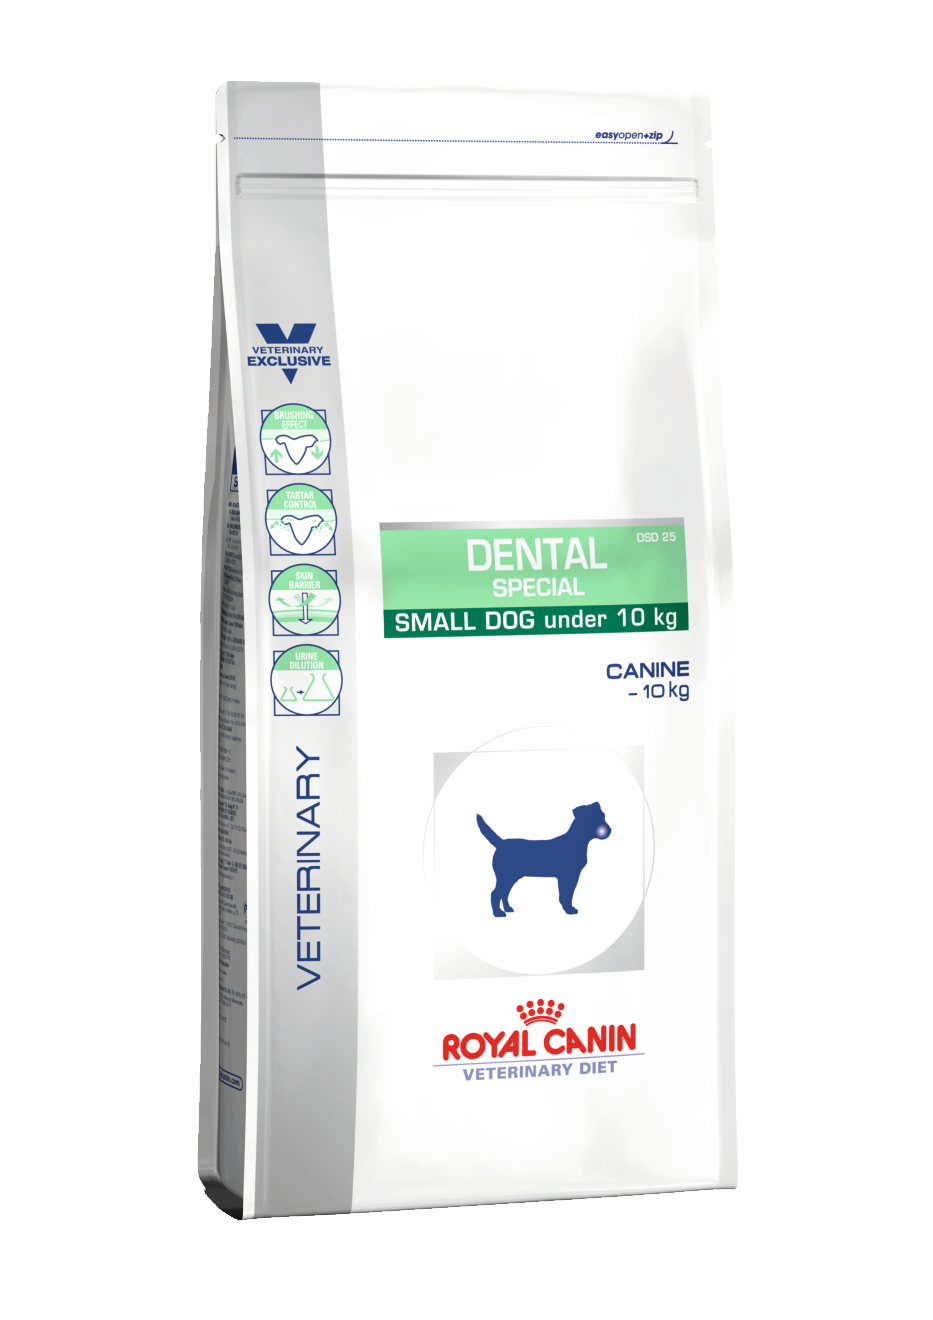 royal canin dental veterinary diet